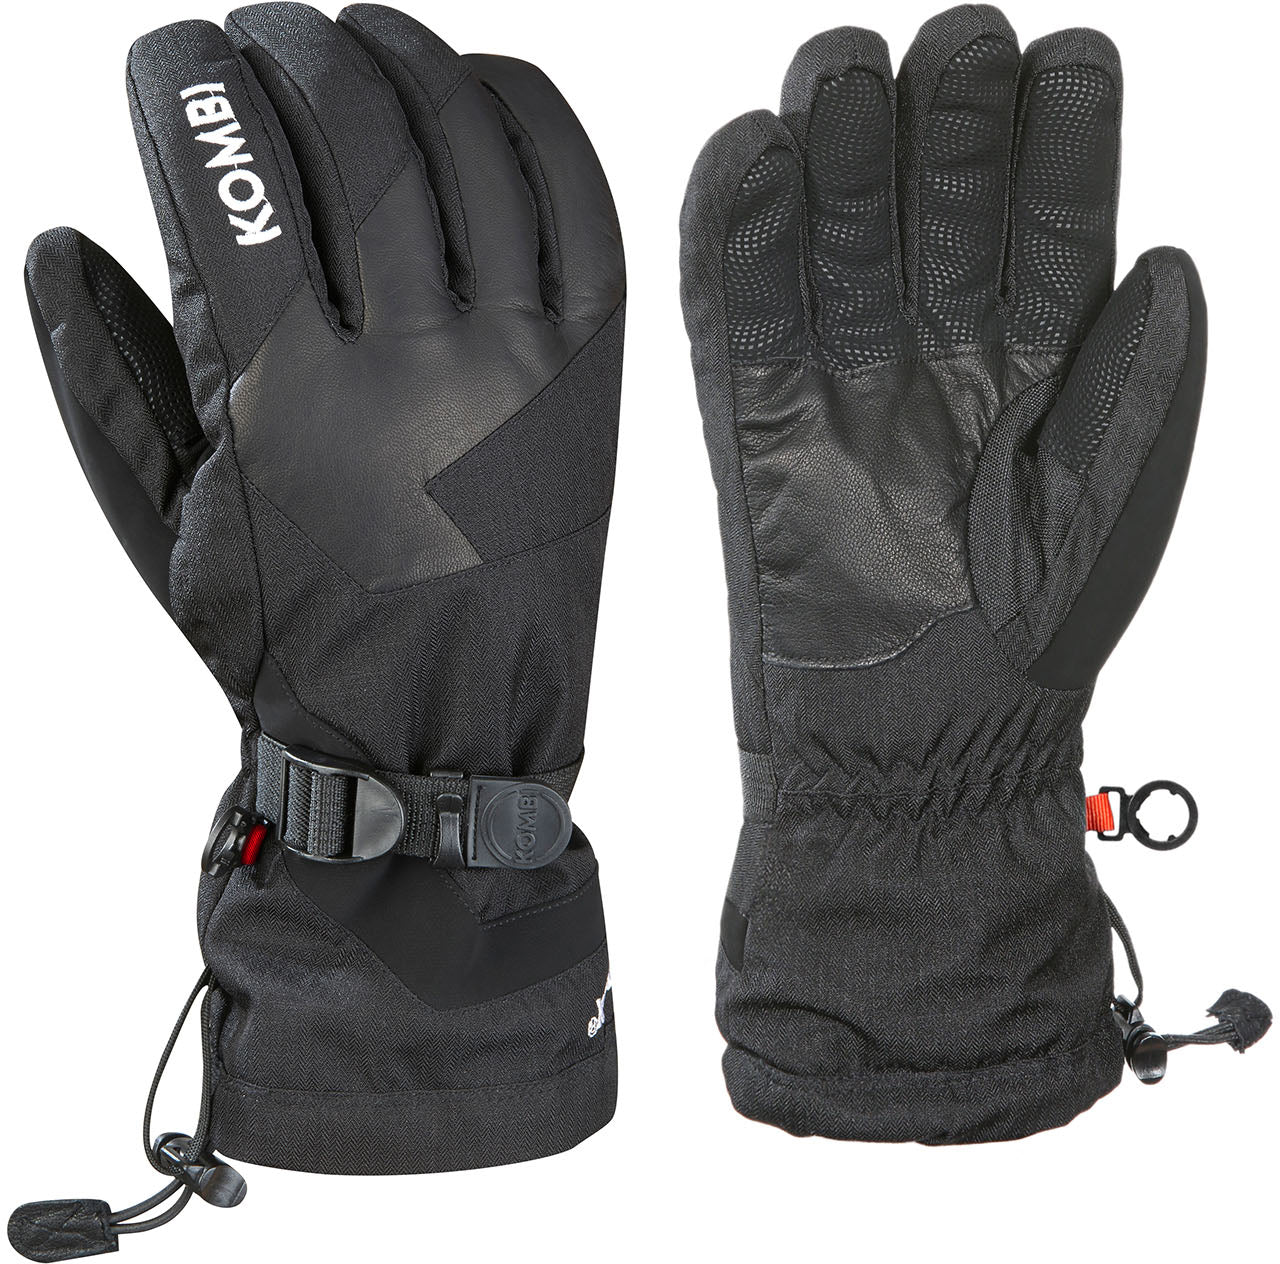 Kombi-h time free gloves